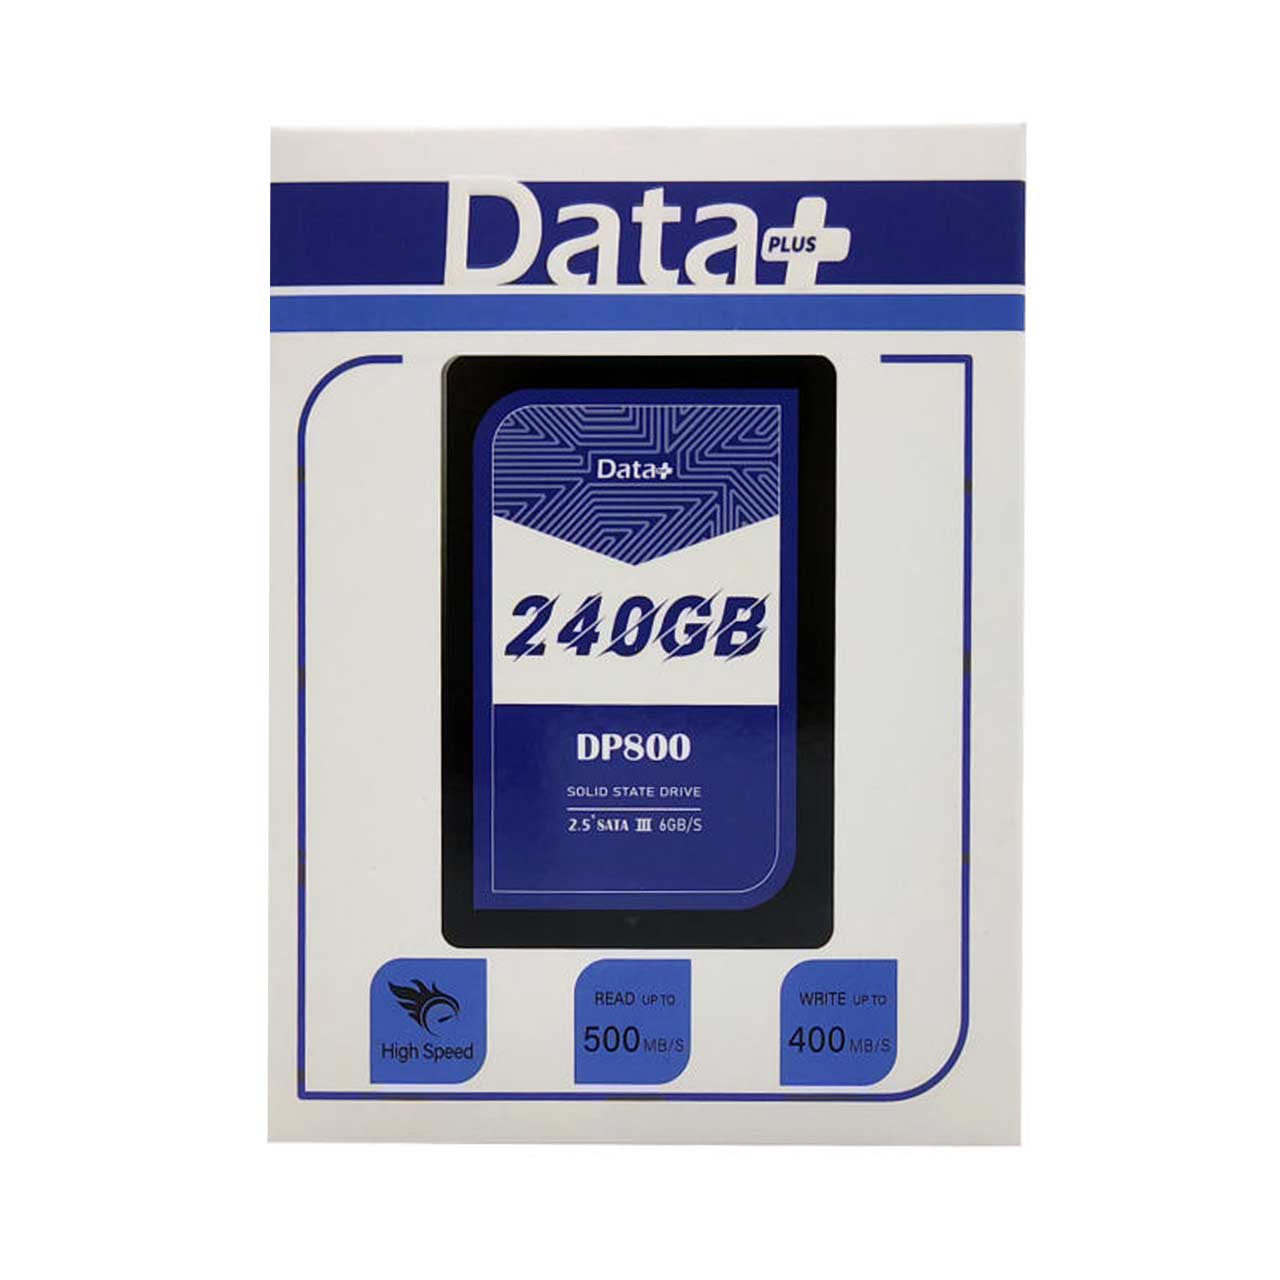 هارد Data Plus SSD مدل DP800 ظرفیت 240GB - مشکی (گارانتی IPM)